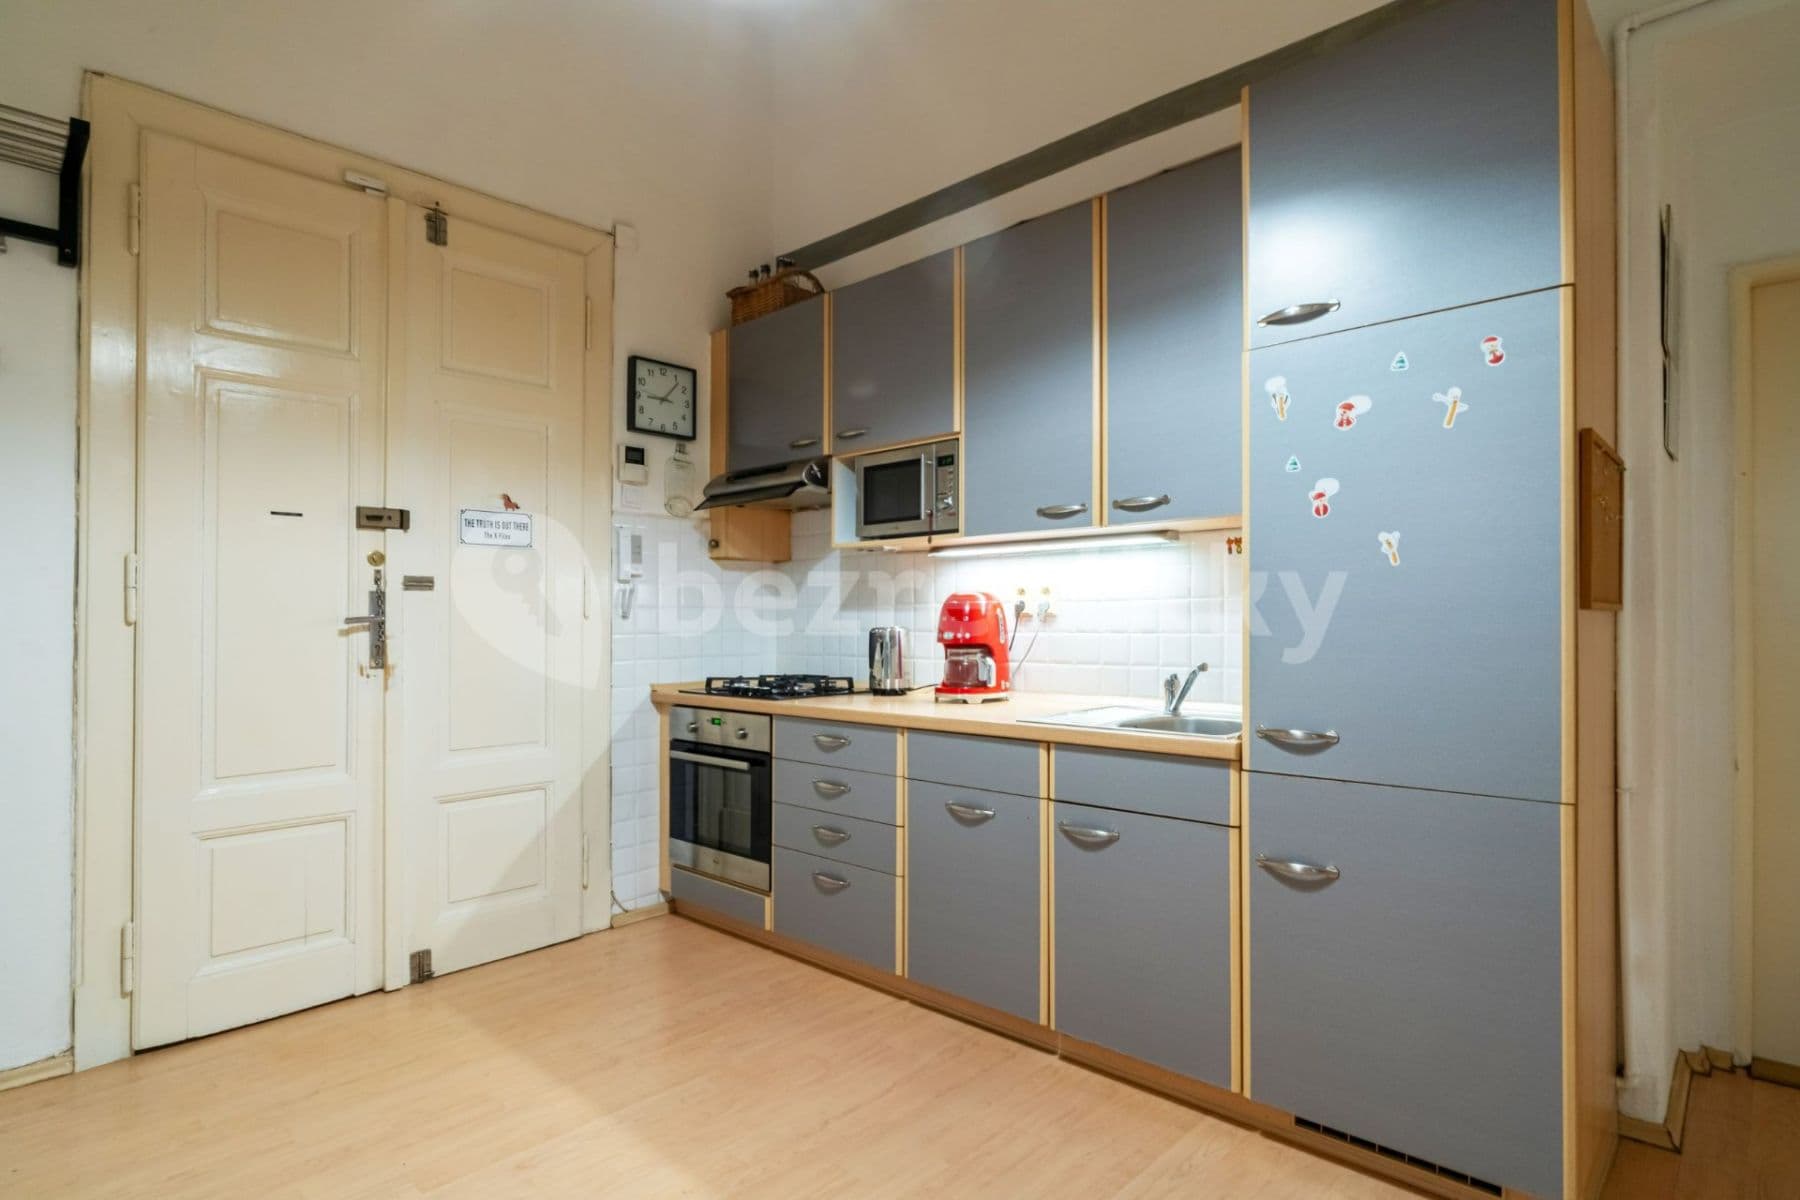 3 bedroom flat for sale, 92 m², Chodská, Prague, Prague